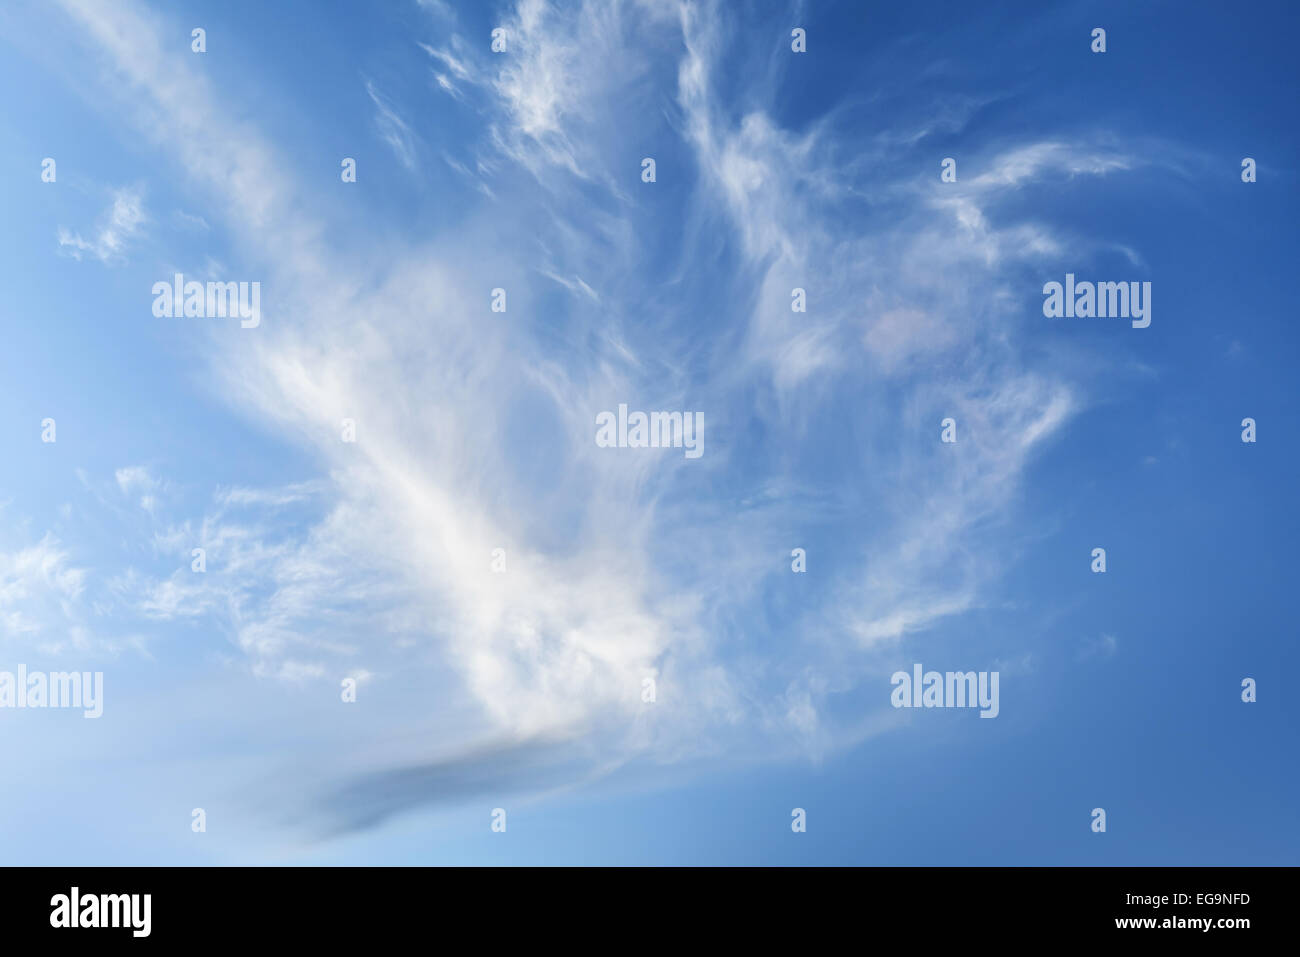 Natürlichen hellen blauen Wolkenhimmel Hintergrundtextur Foto Stockfoto